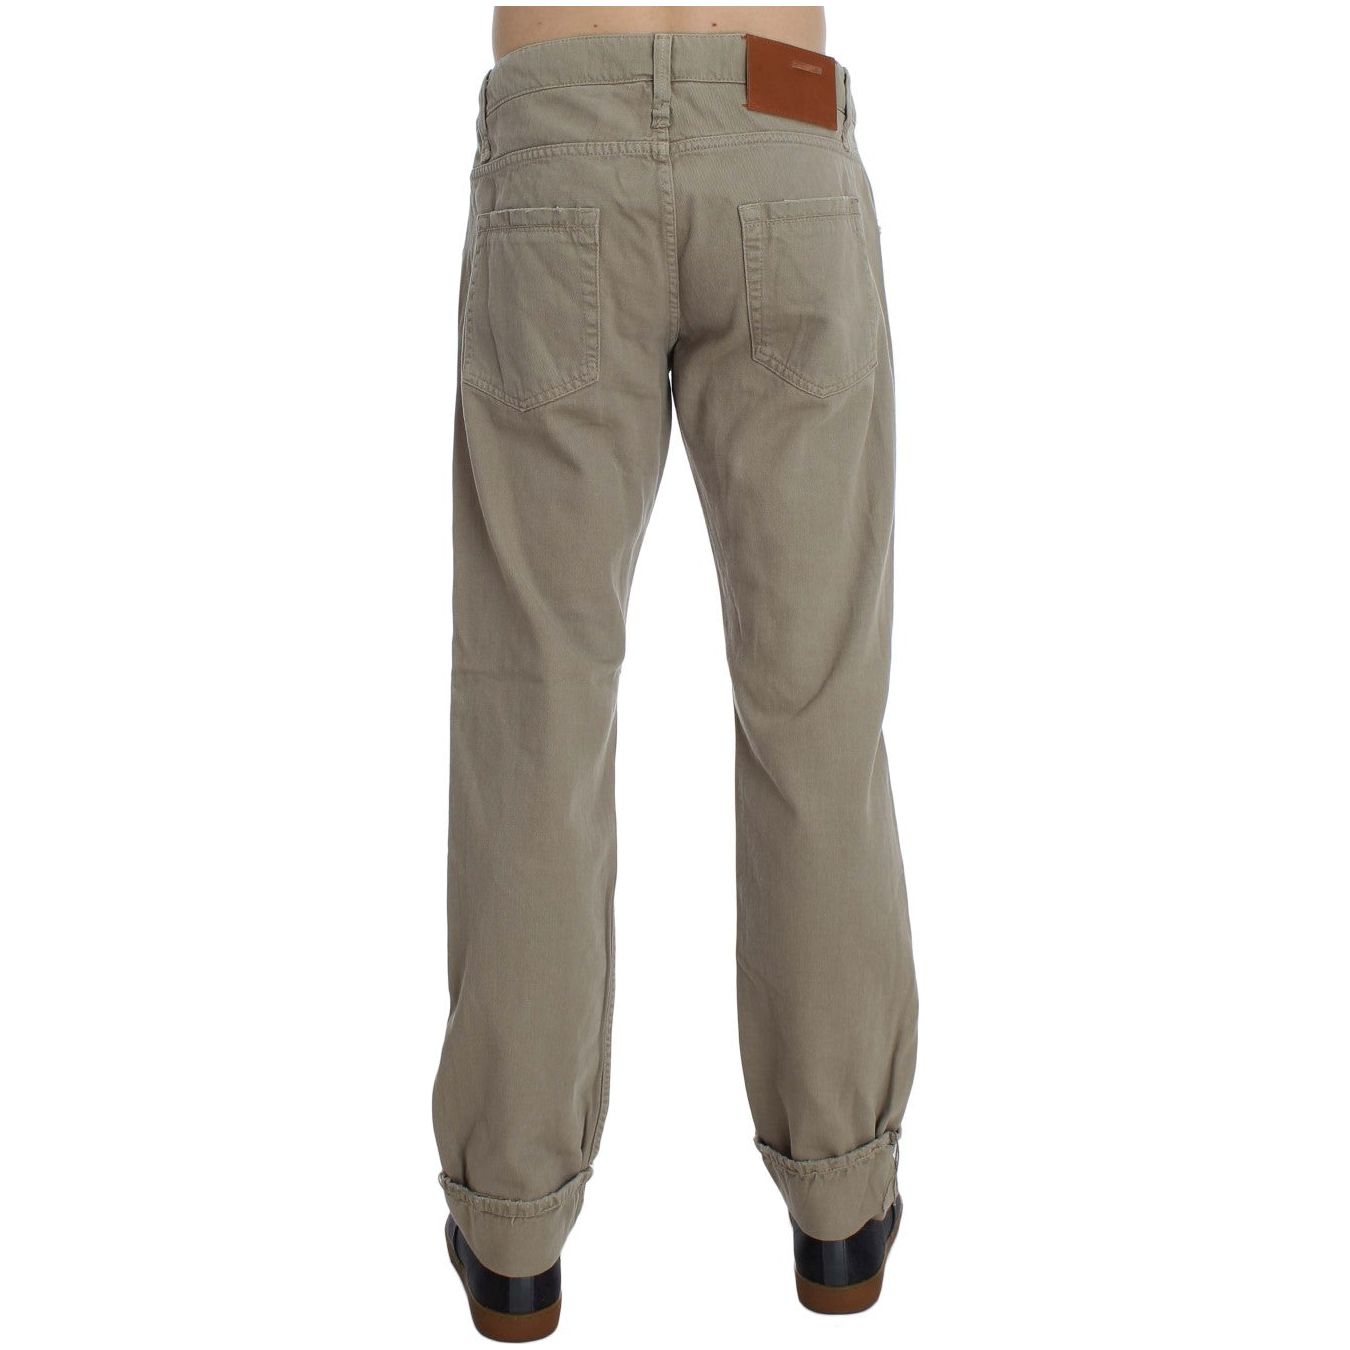 Jeans & Pants Beige Straight Fit Cotton Jeans for Men Acht